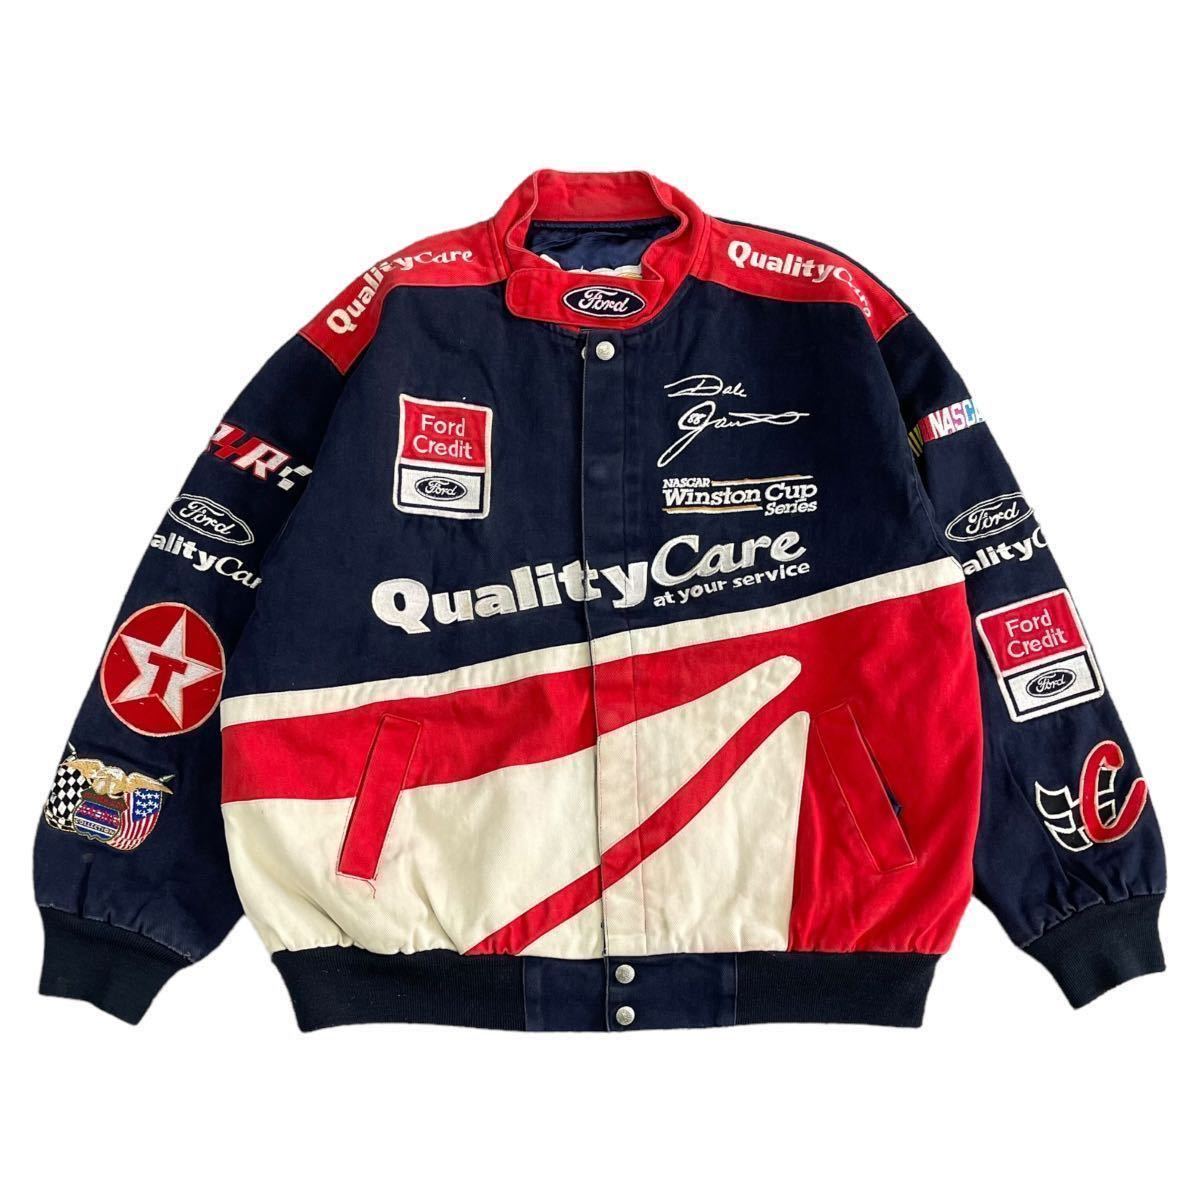 90s Jeff Hamilton レーシング ジャケット Quality Care ブルゾン Ford NASCAR 刺繍 ロゴ ワッペン 企業 ジェフ ハミルトン ヴィンテージ_画像2